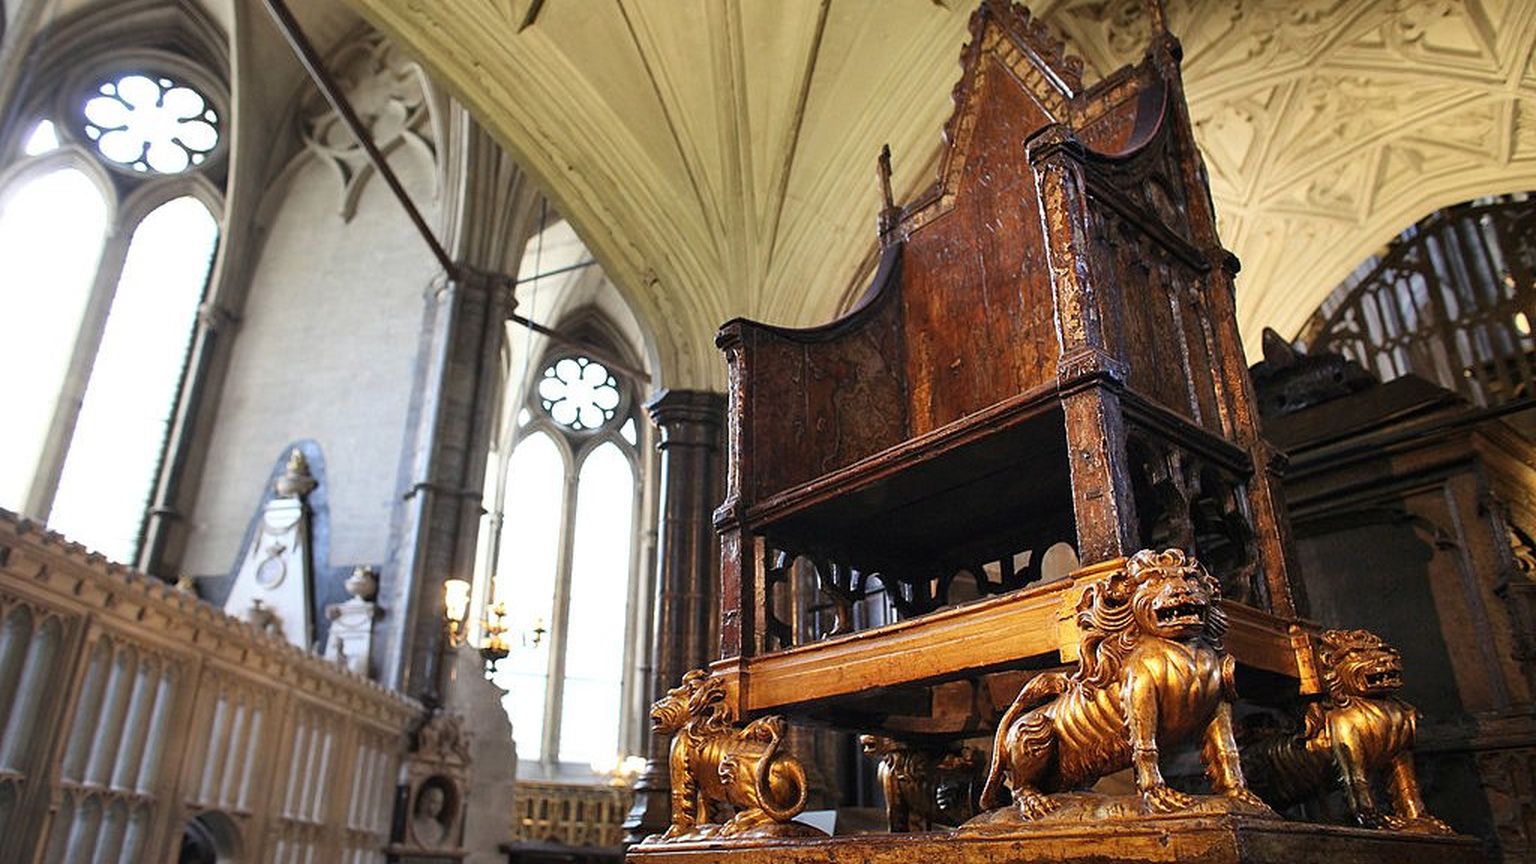 Коронационное кресло Эдуарда I. Он заказал его еще в XIII веке, а служит оно до сих пор